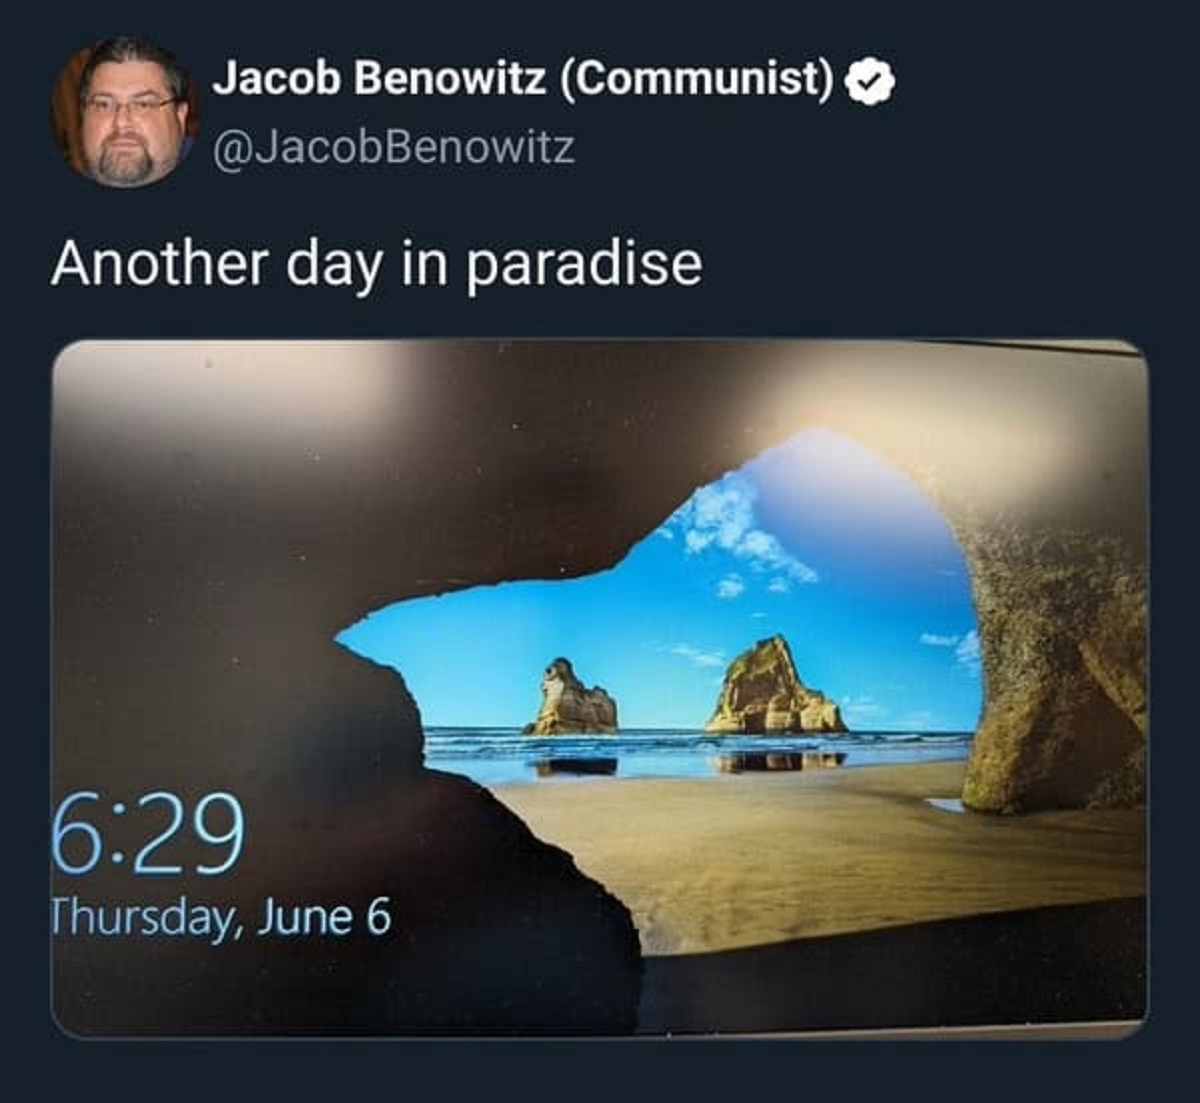 fond d écran windows grotte - Jacob Benowitz Communist Another day in paradise Thursday, June 6